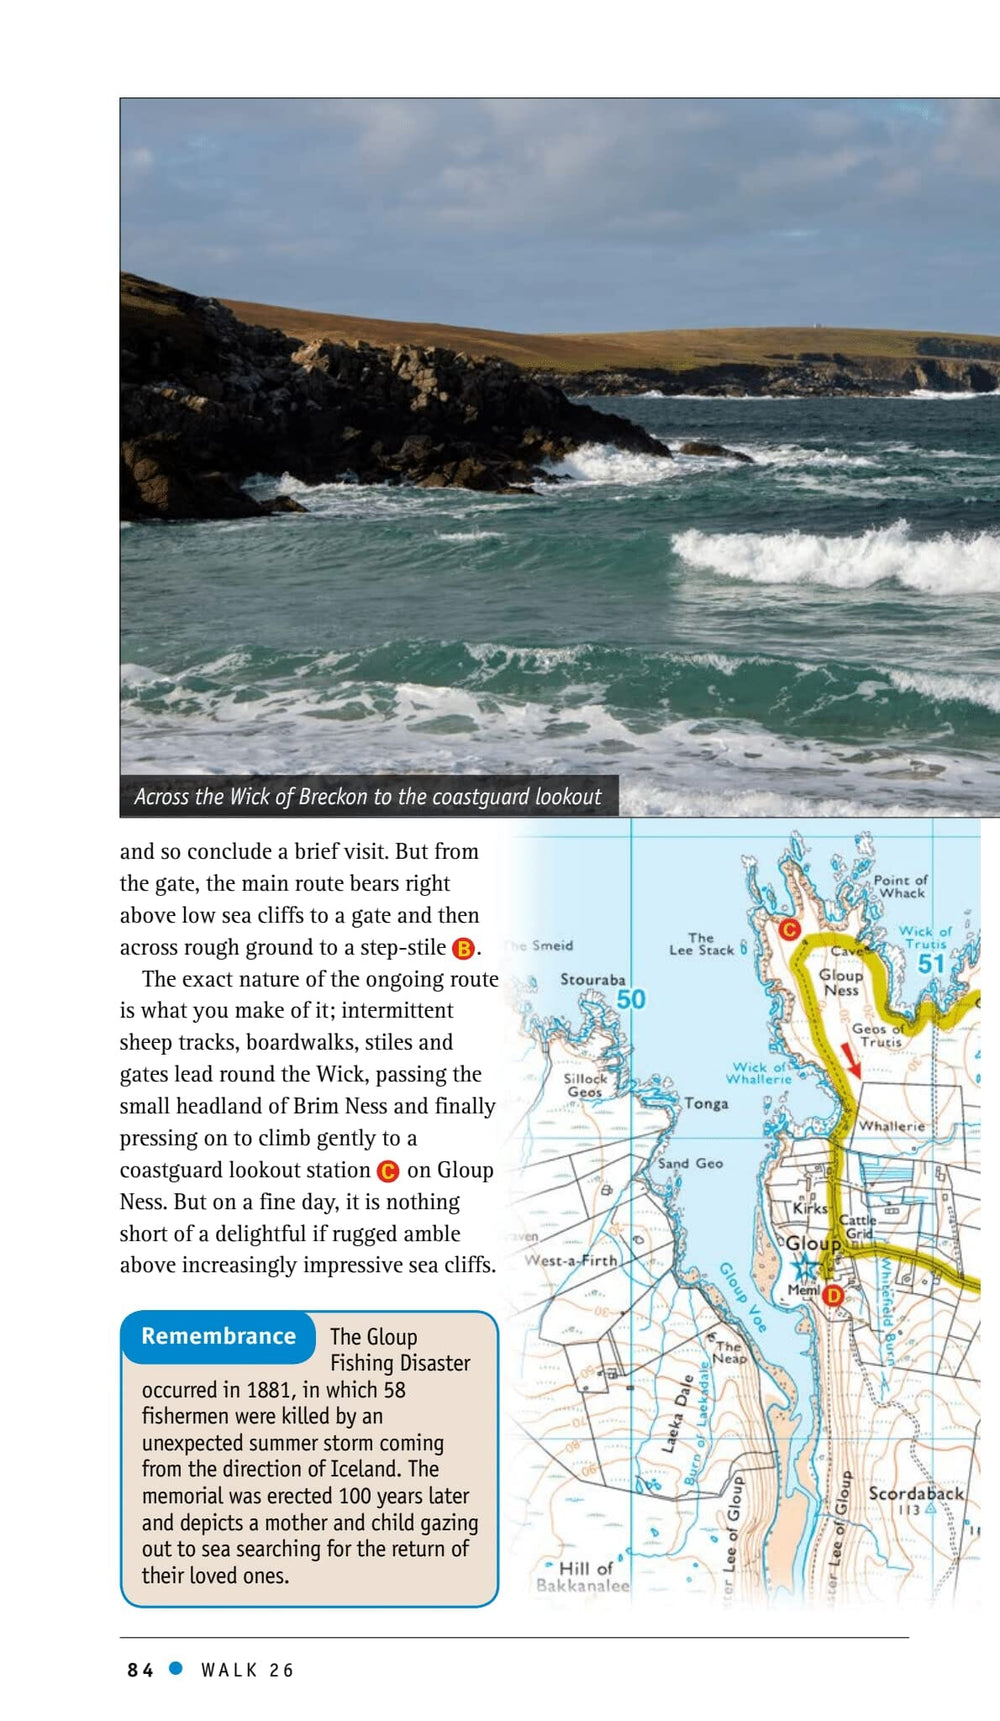 Guide de randonnées (en anglais) - Orkney & Shetland | Ordnance Survey - Pathfinder guides guide petit format Ordnance Survey 